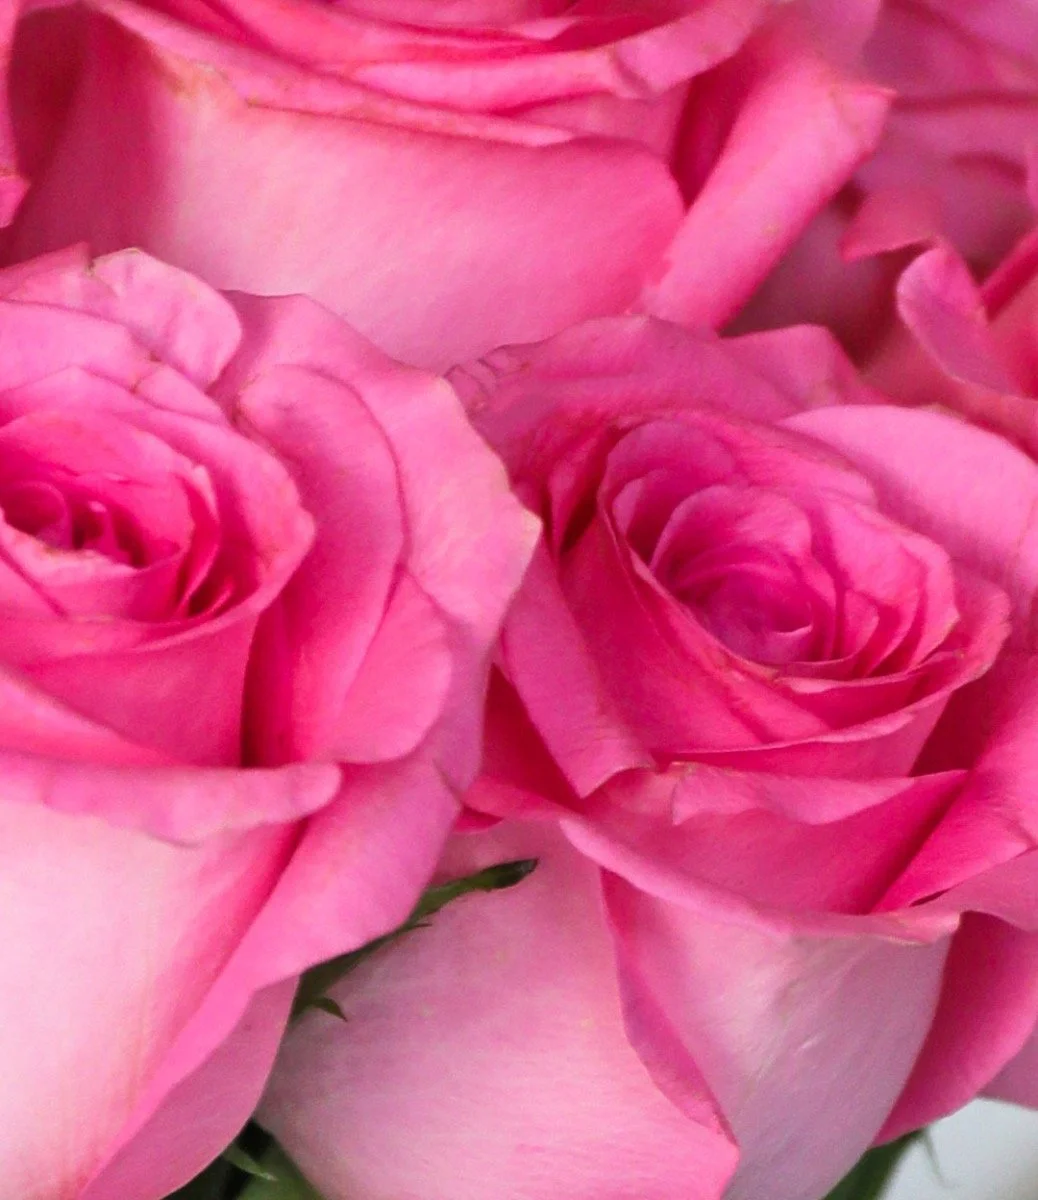 One Dozen of Pink Roses Arrangement